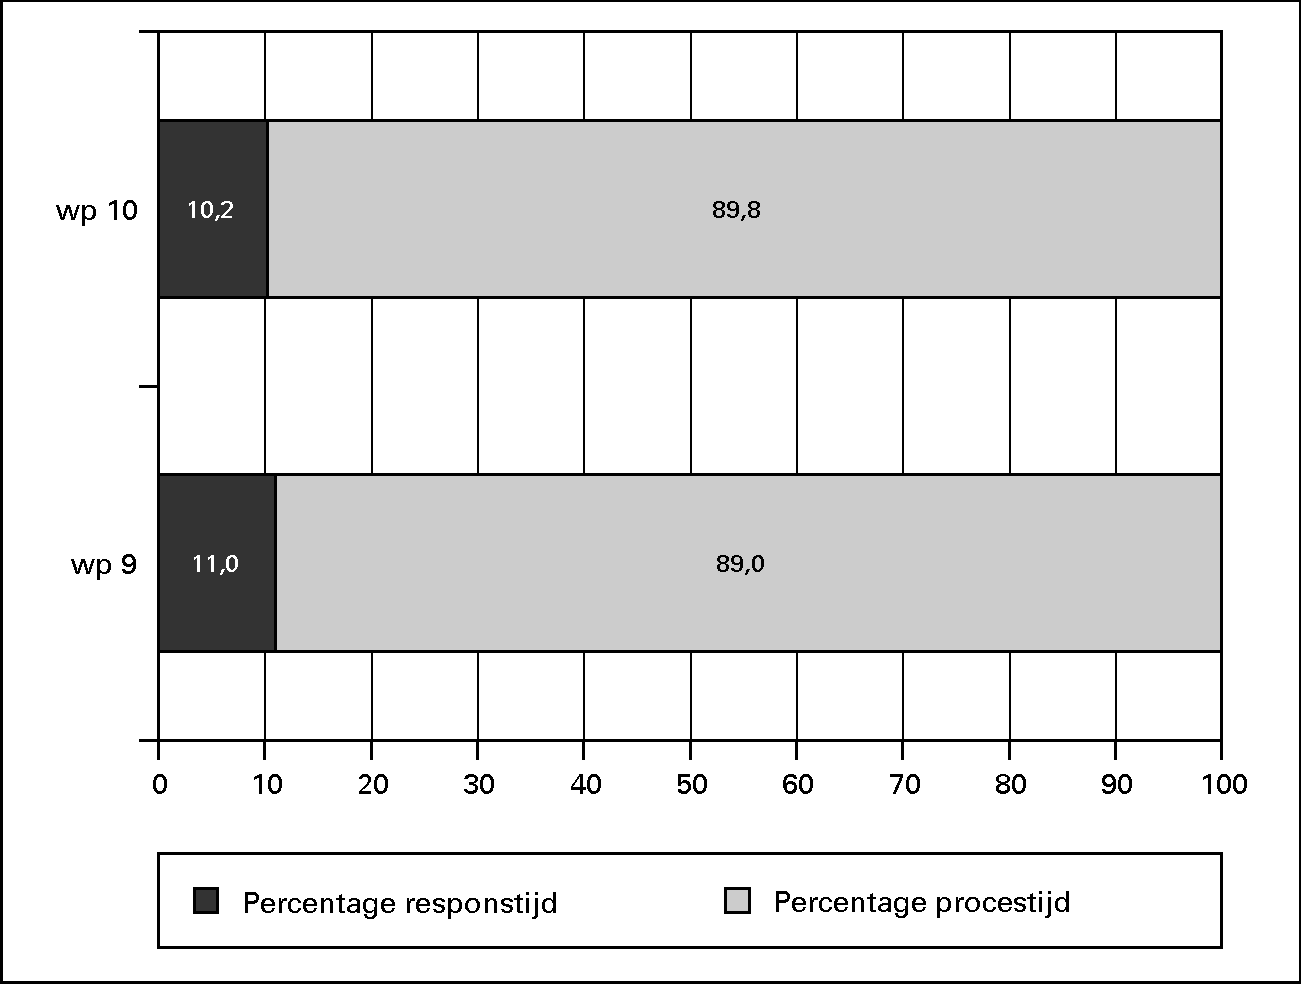 Relatieve respons- en procestijden (in %) voor de 						werkprocessen van BVO.